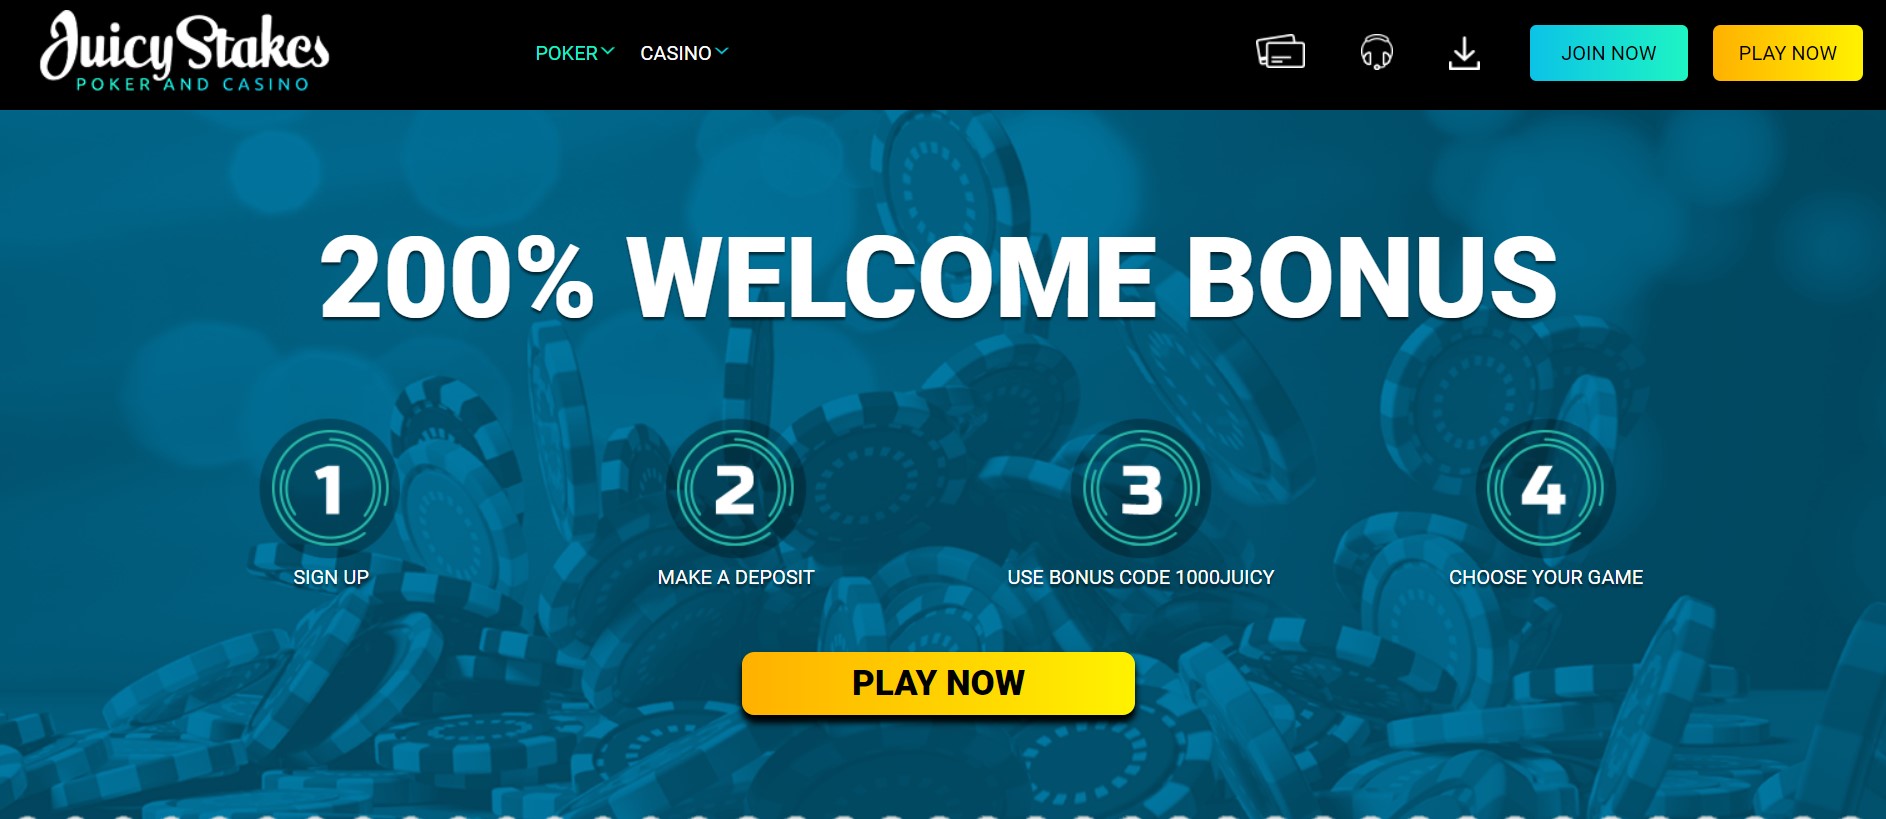 Juicy Stakes Poker homepage